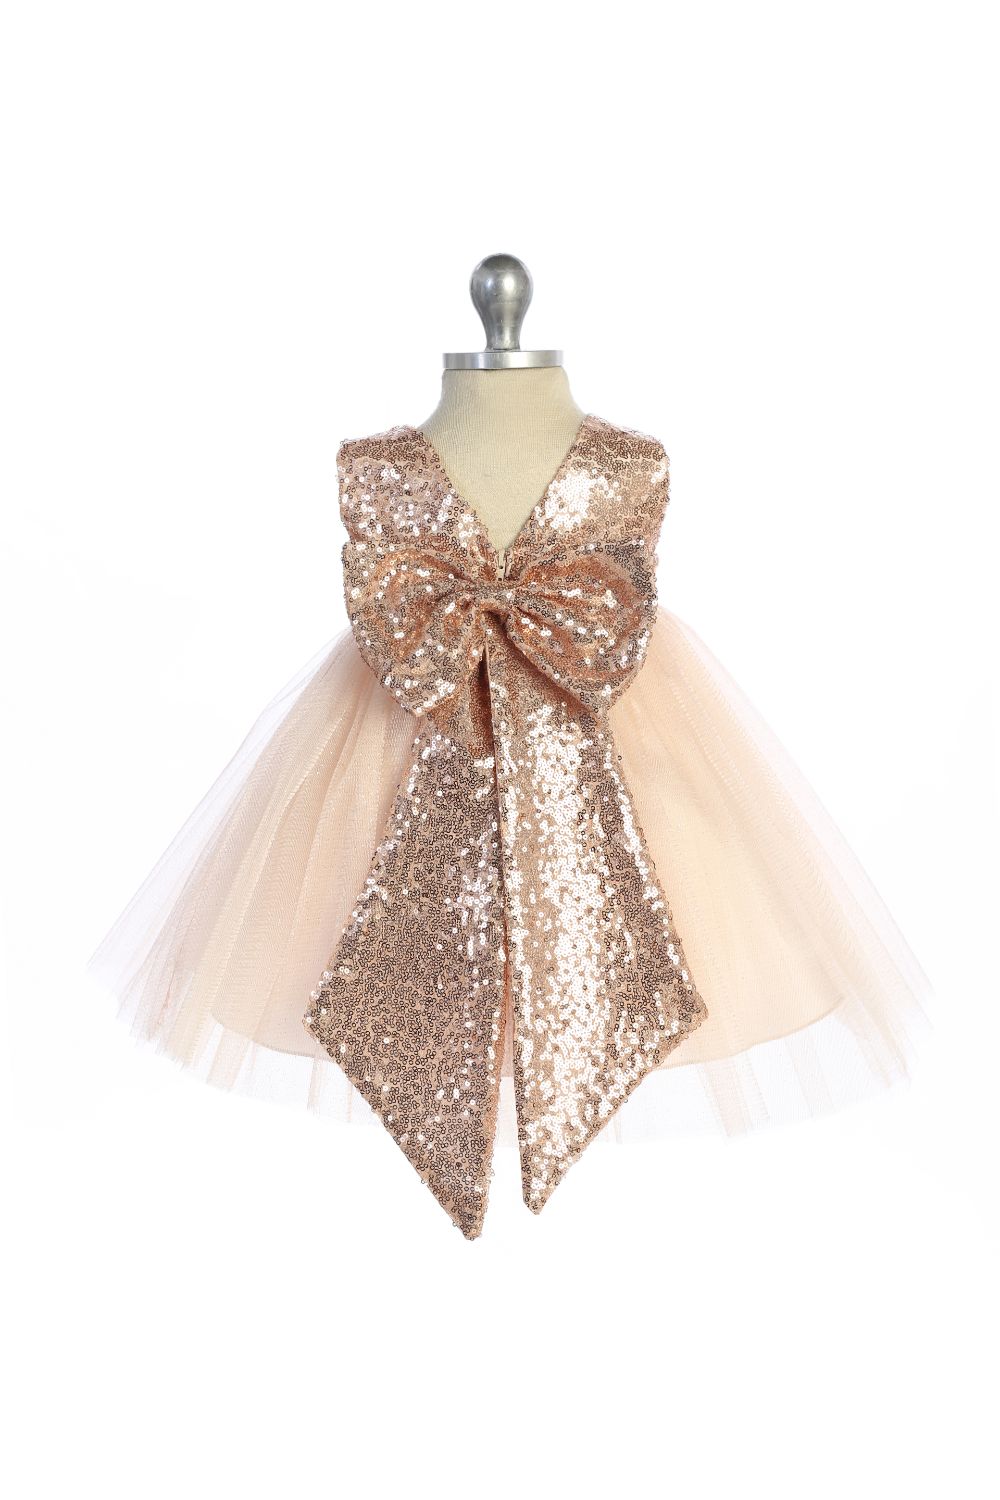 498B Blush/Rose Gold Sequins V Back & Bow Baby Dress